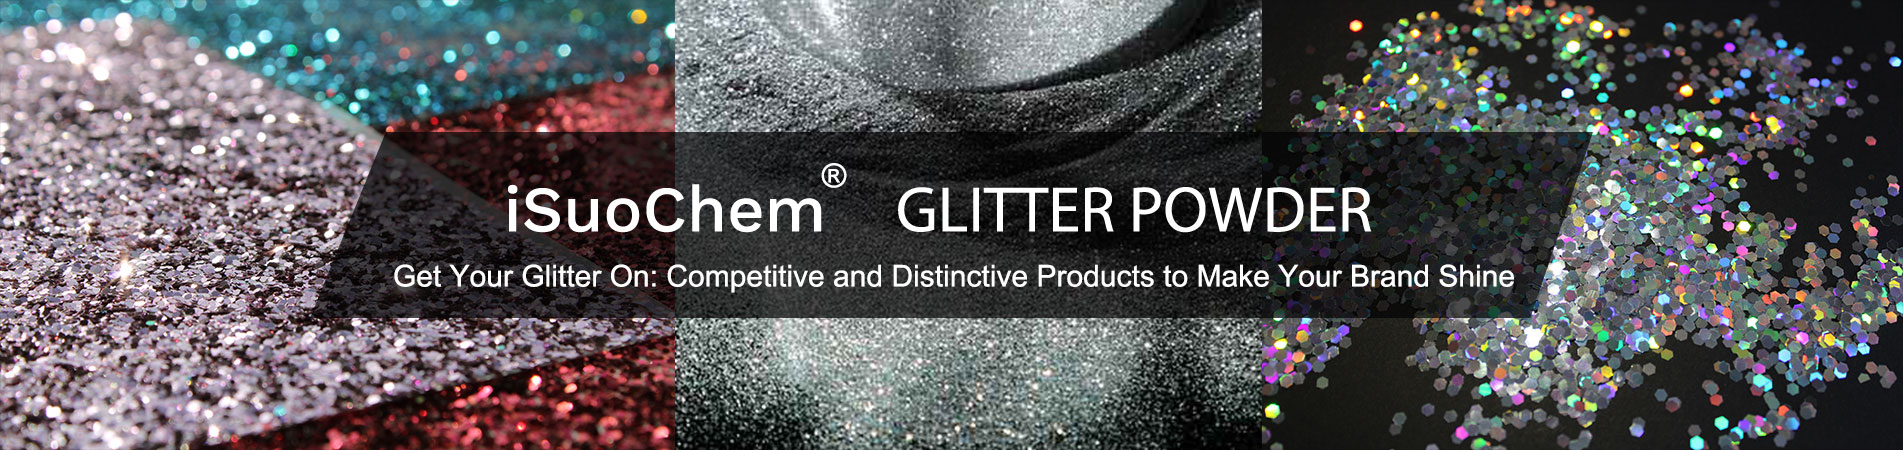 Glitter powder Manufacturer